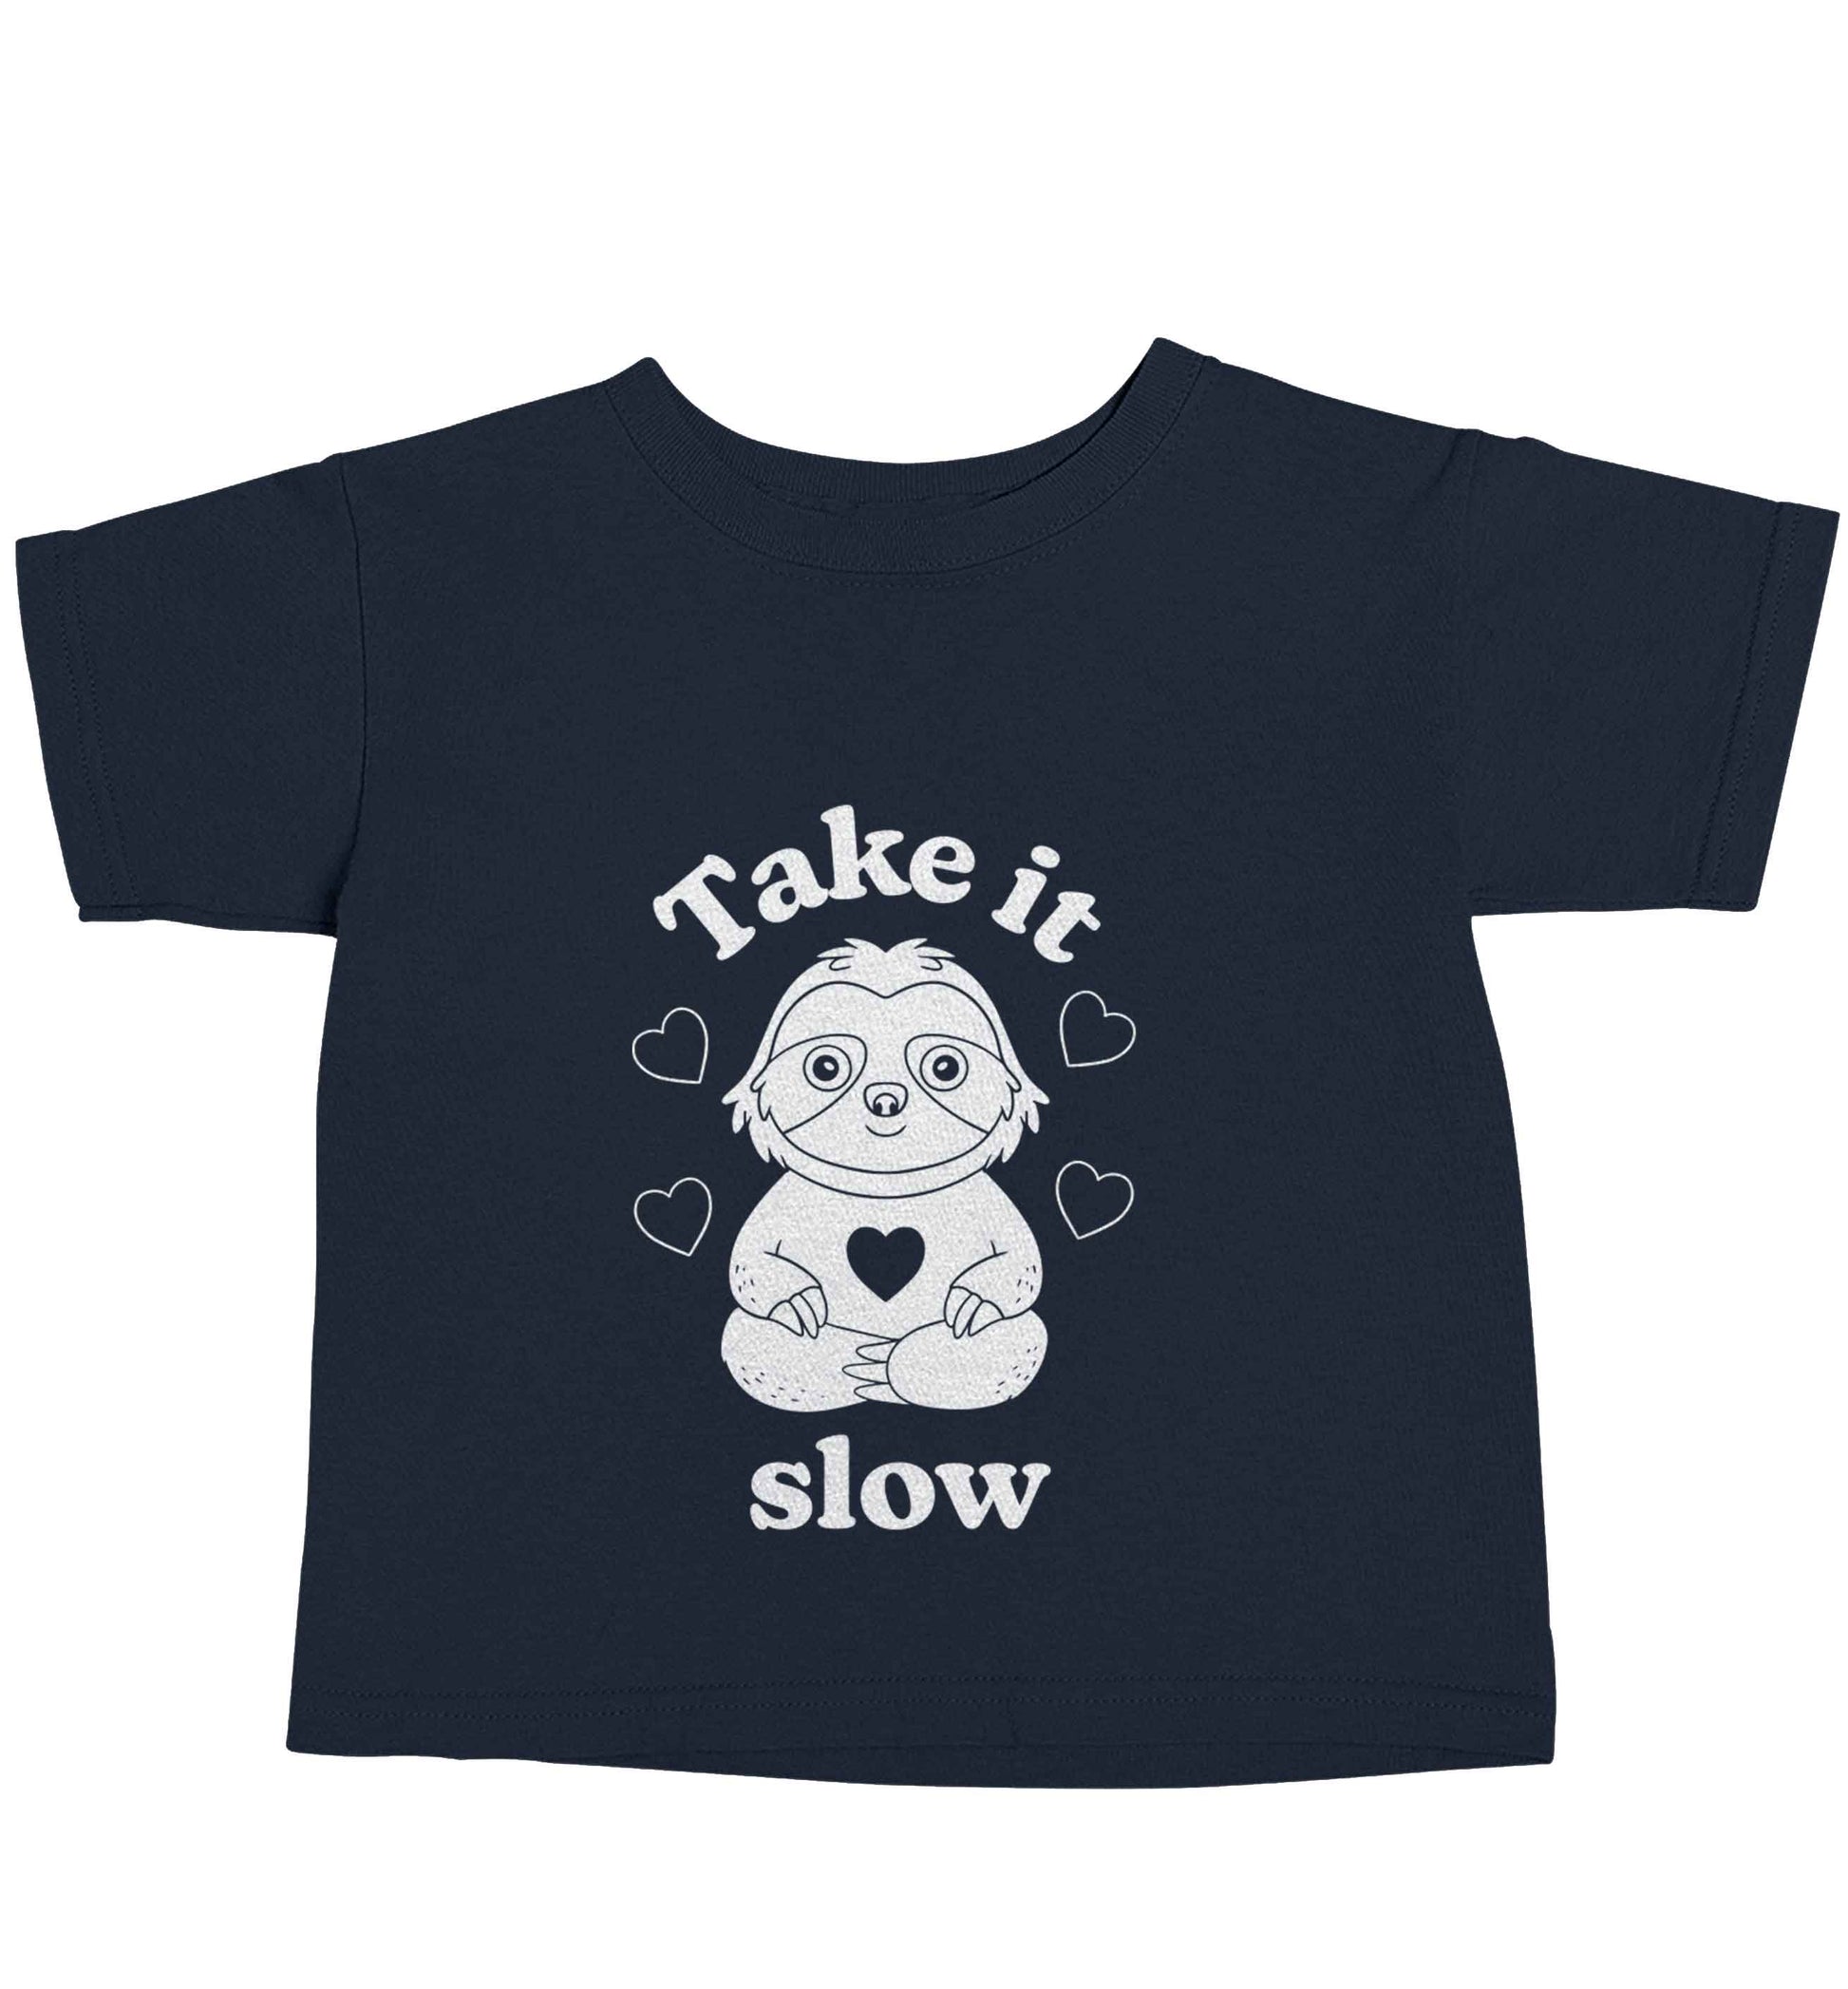 Take it slow navy baby toddler Tshirt 2 Years